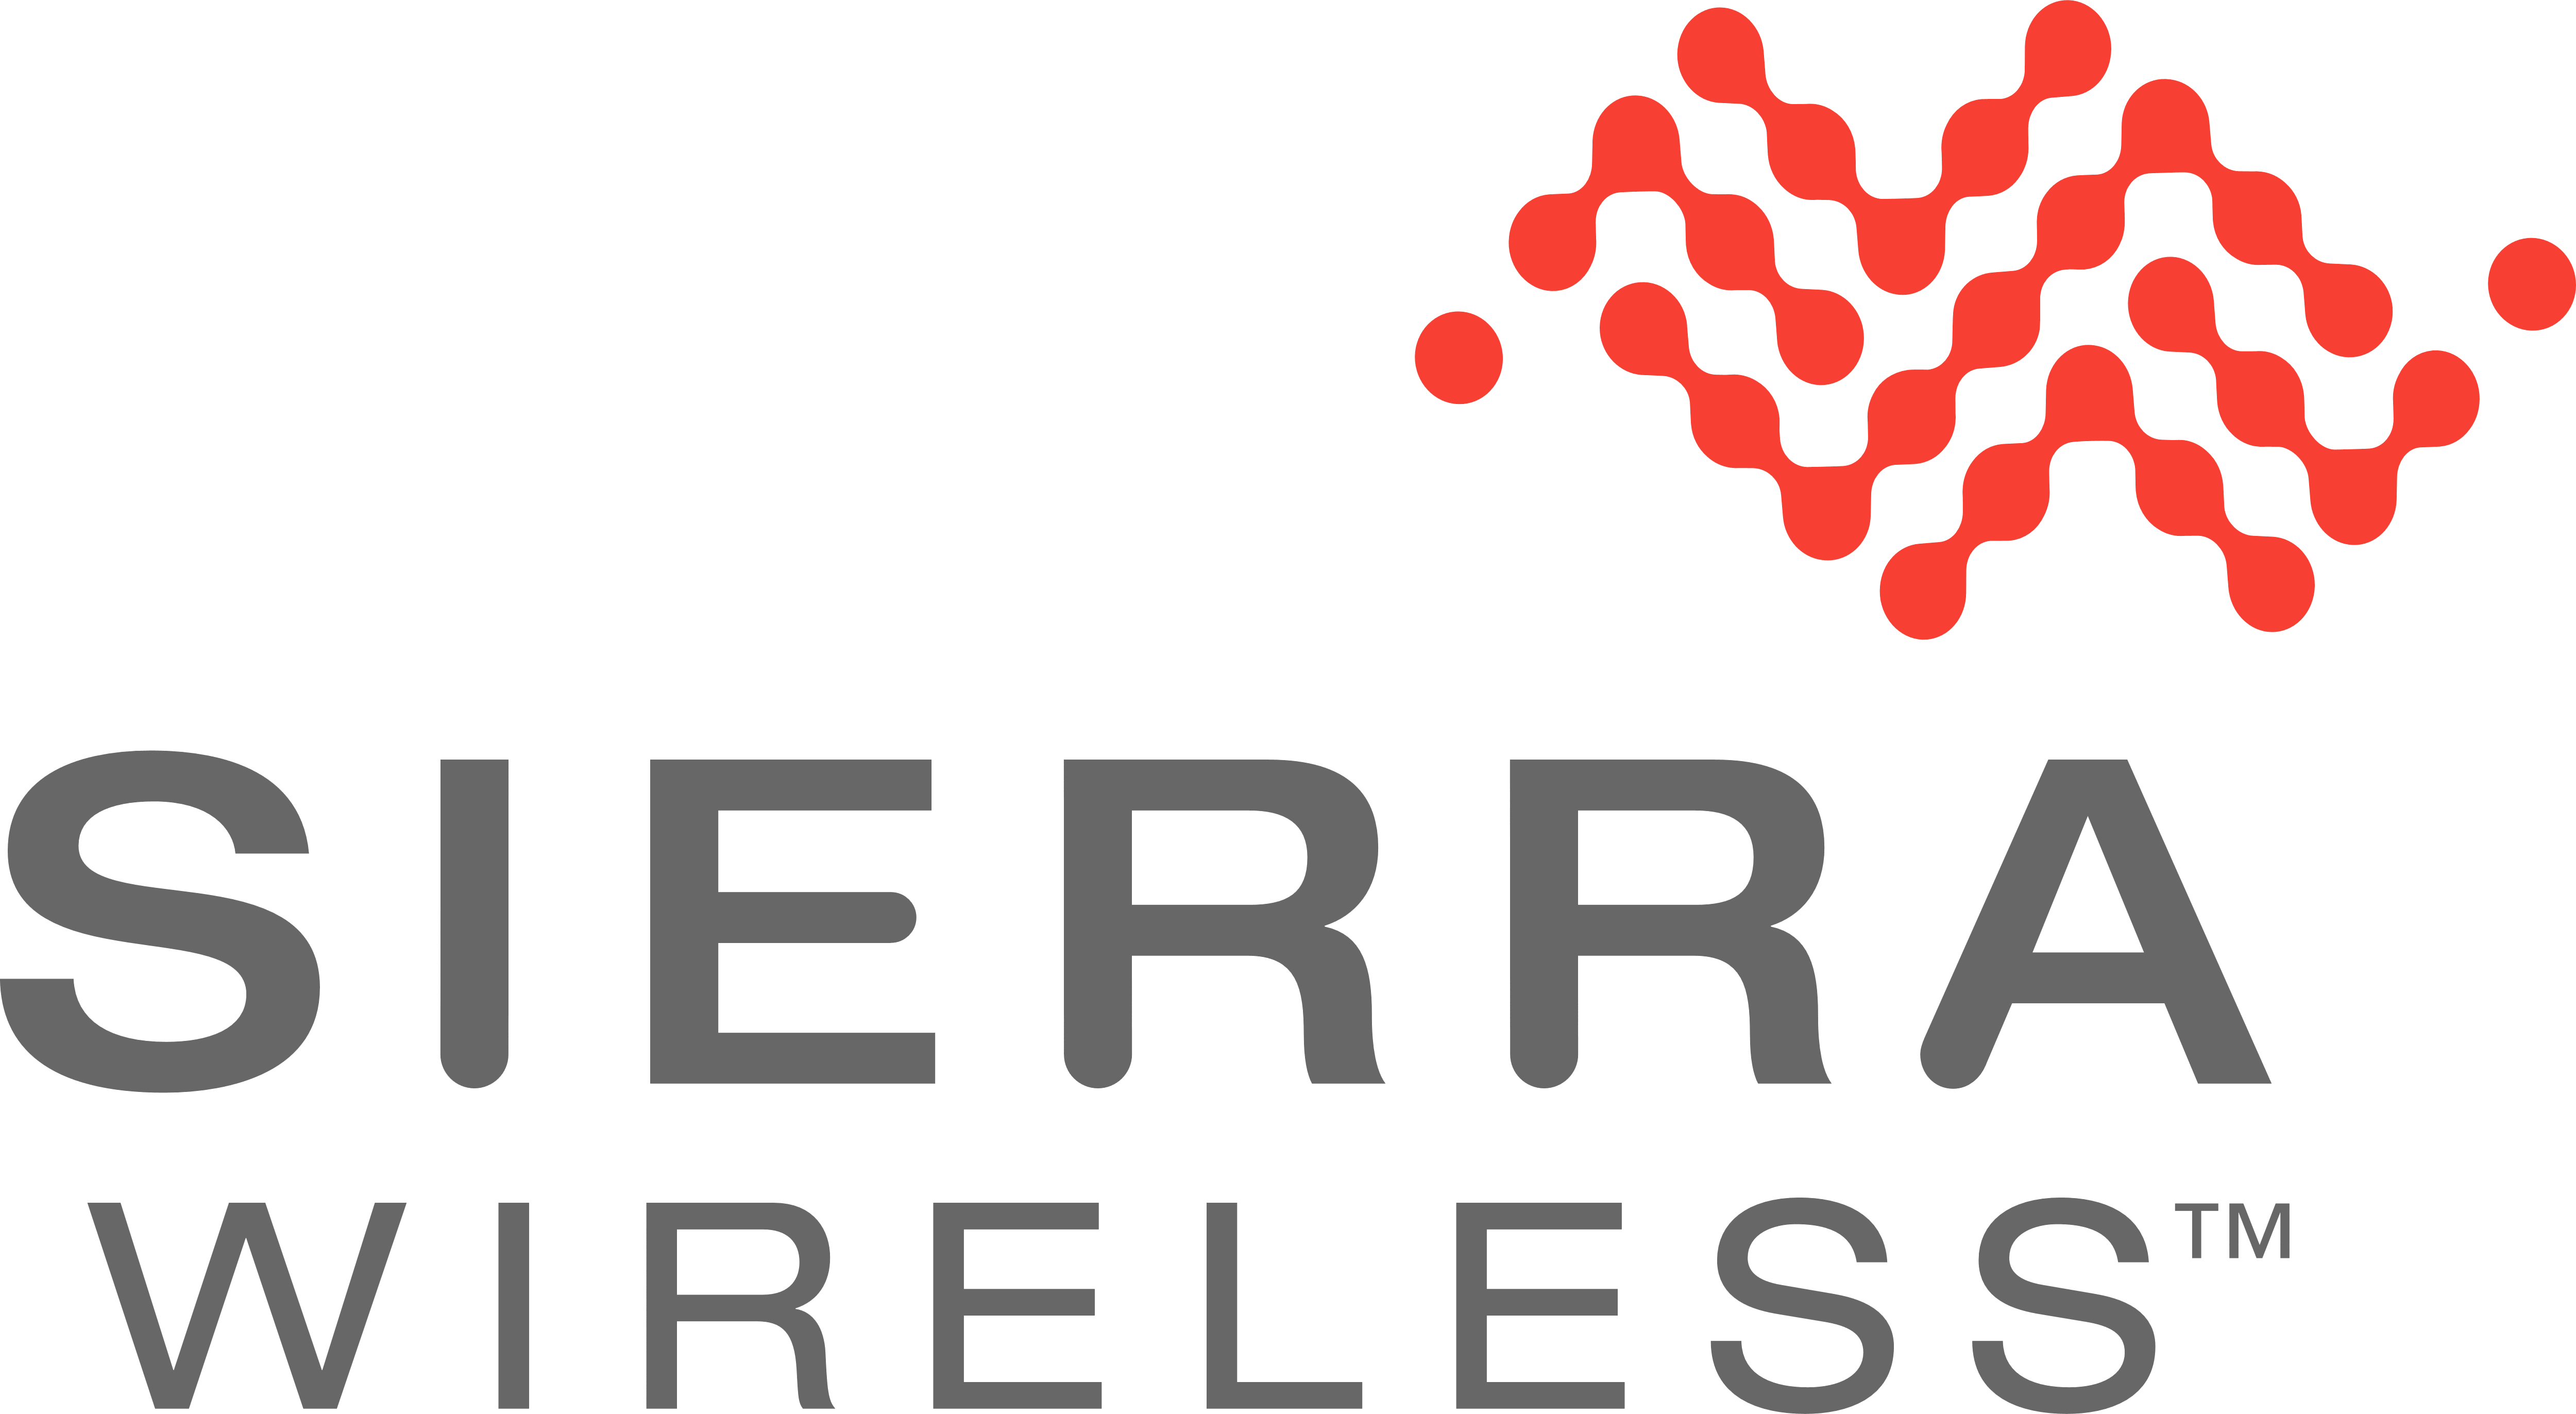 SIerra Wireless logo